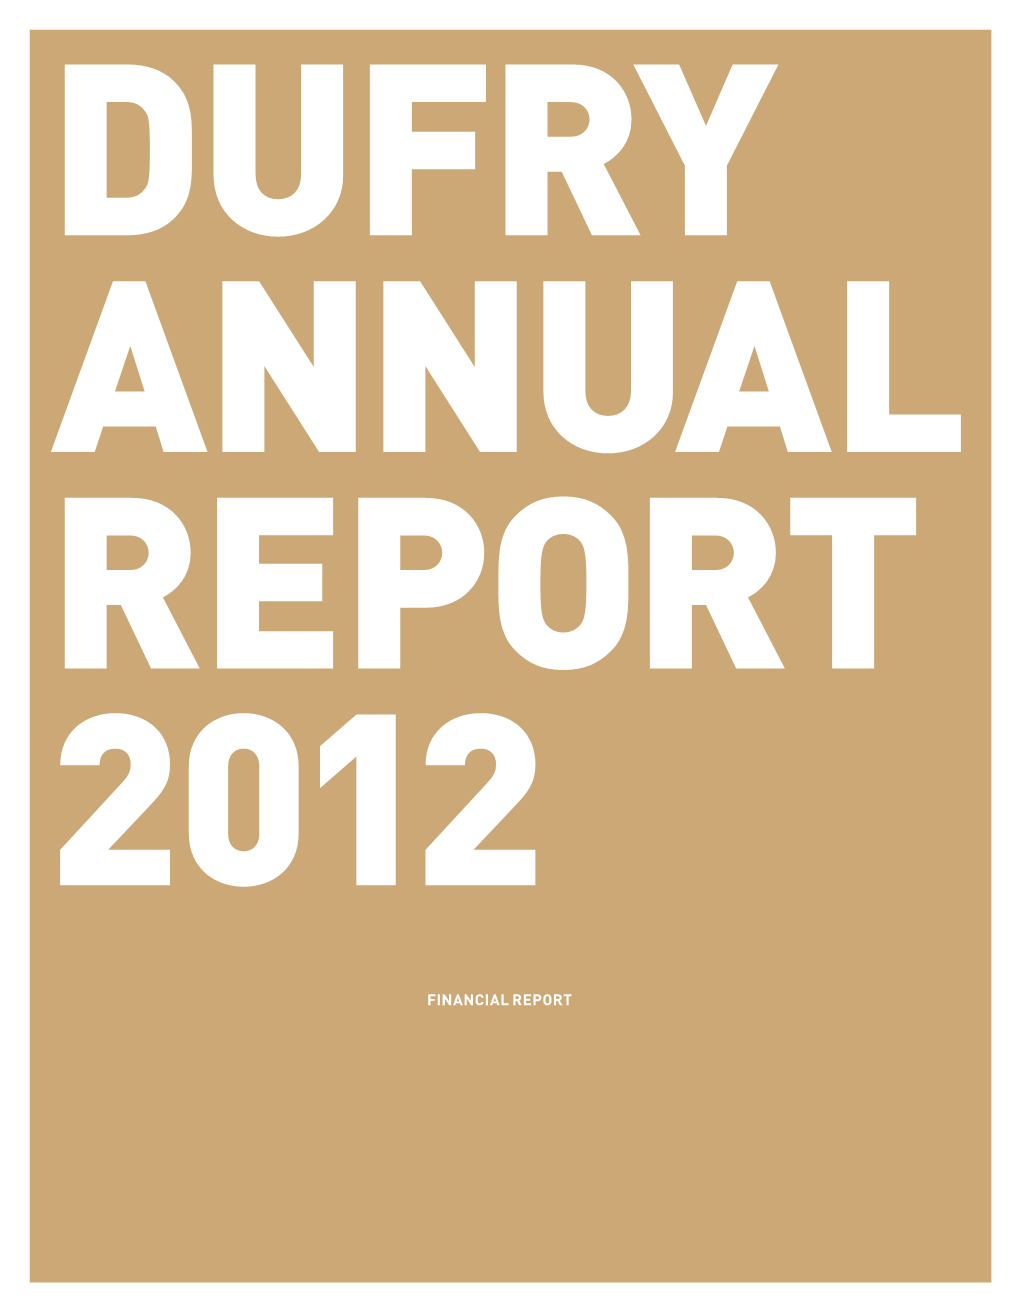 Annual Report 2012 FINANCIAL Report Financial Report